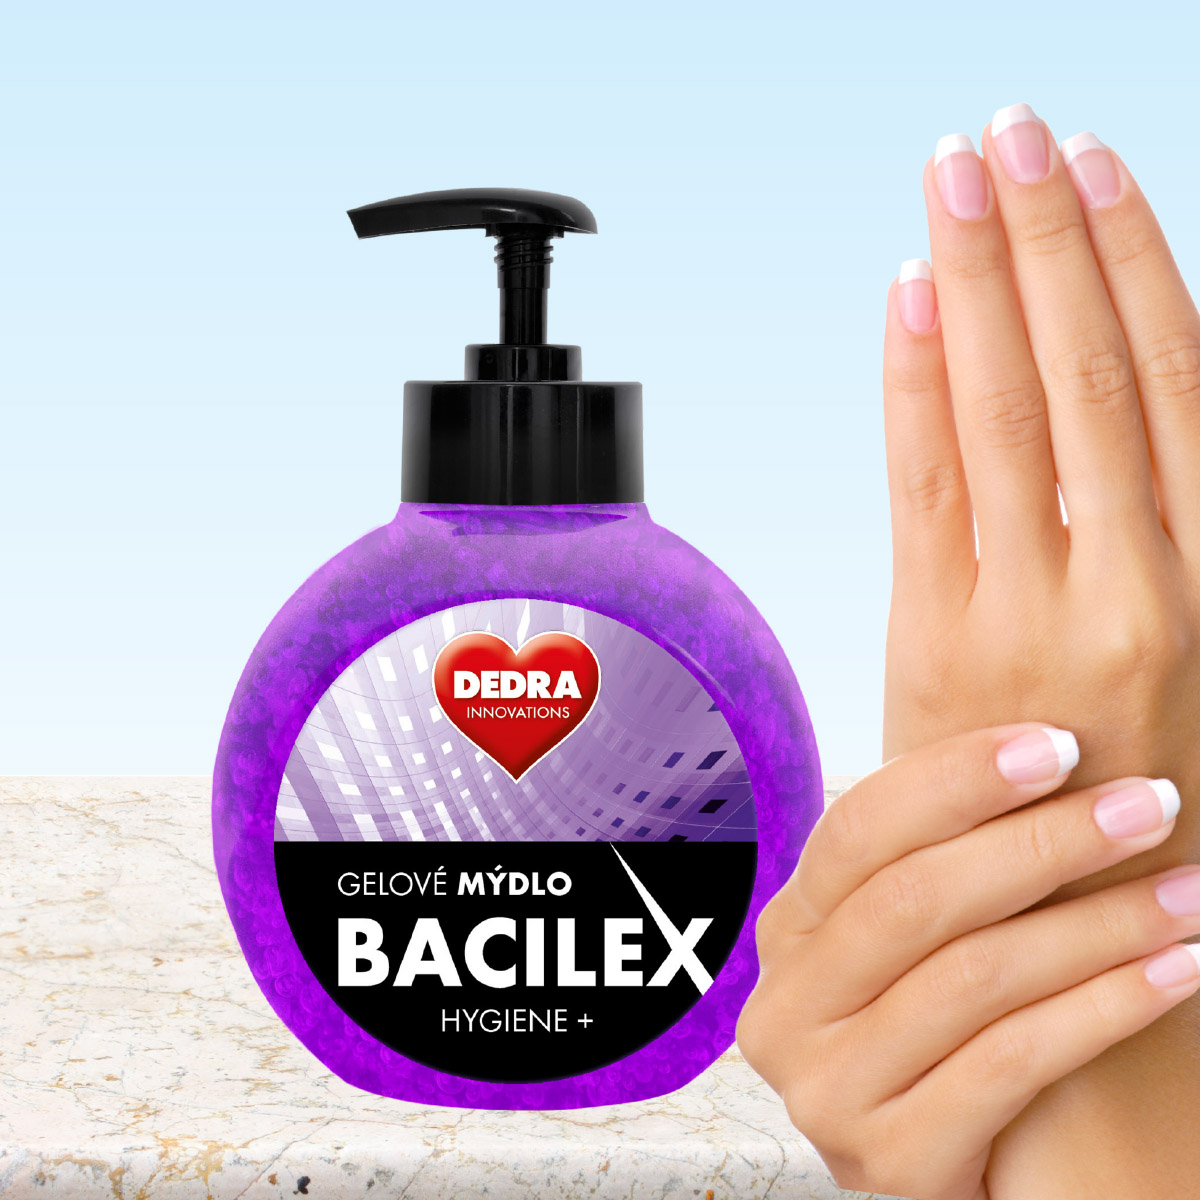 Gélové mydlo BACILEX Hygiene + s antimikrobiálnou prísadou, 500 ml